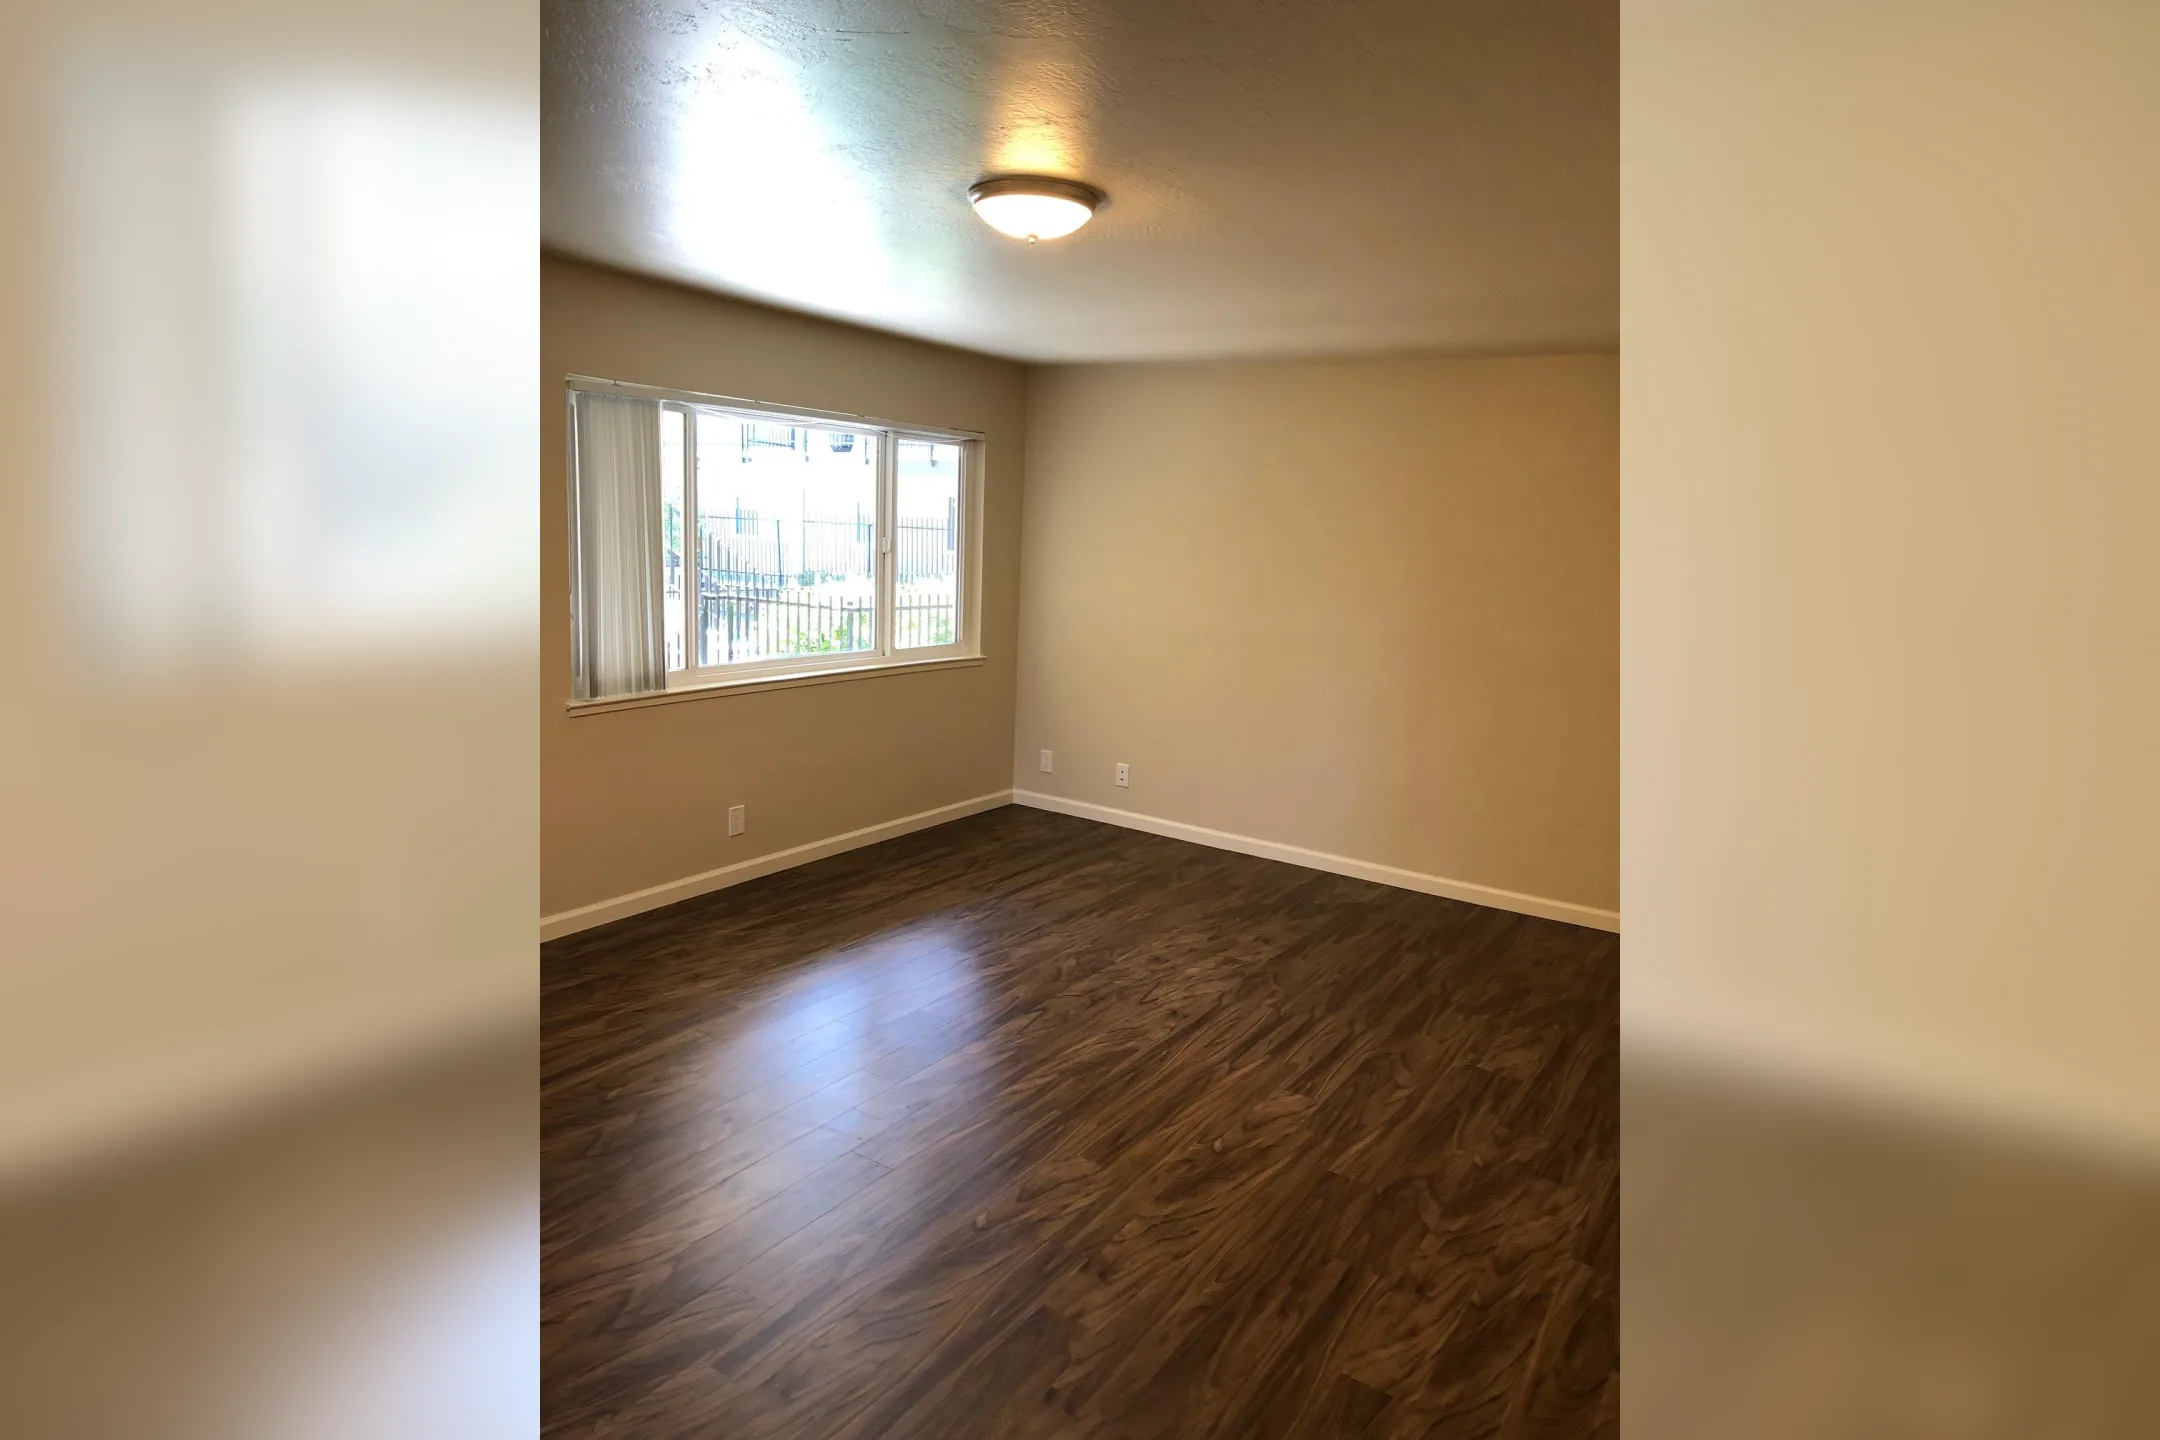 Living Room - Shangri-La Apartments - Pacific Grove, CA